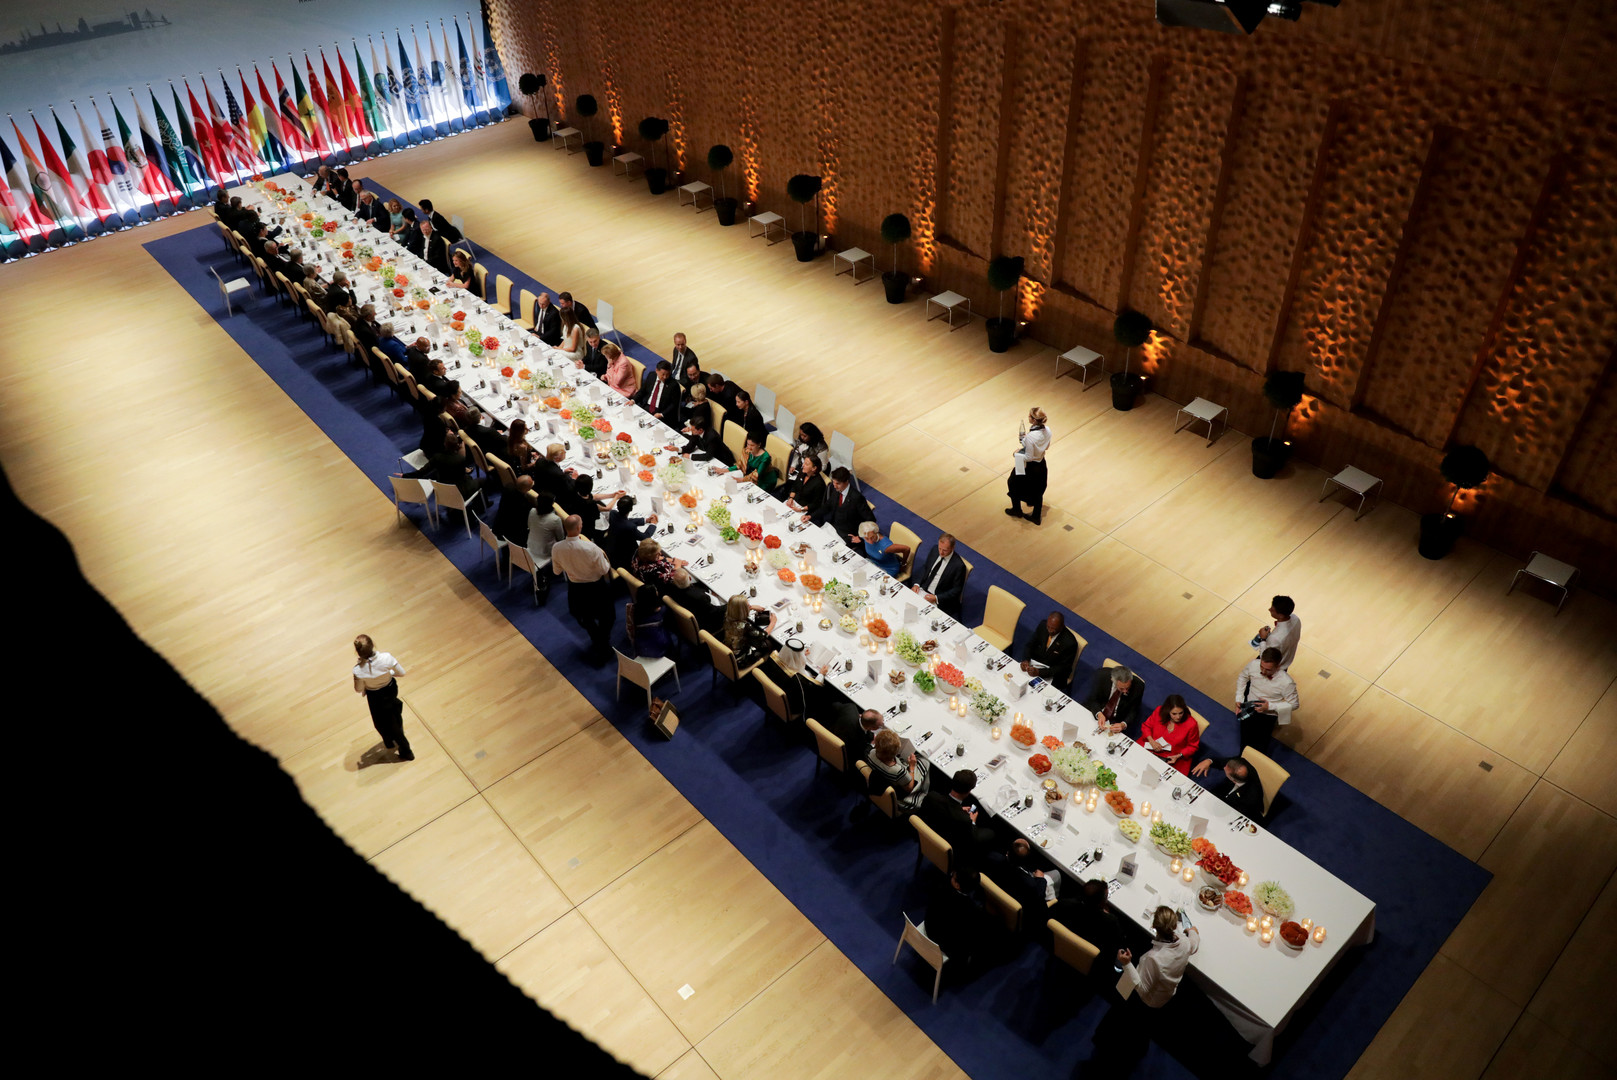 Les images du dîner du G20 laissent voir qui est assis à côté de Trump, Merkel ou Poutine